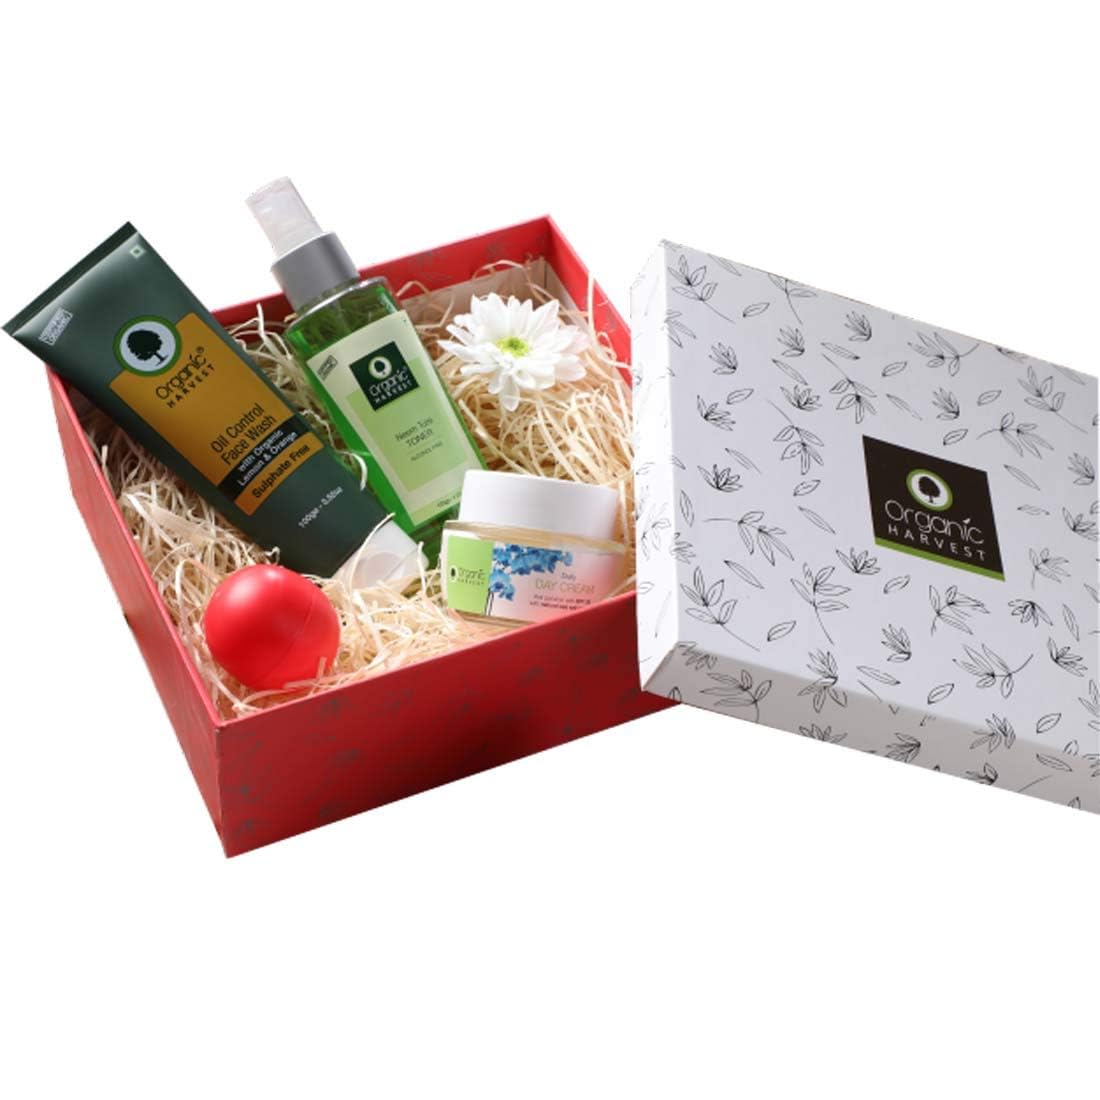 Organic Harvest Oily Skincare Gift Kit for Women & Girls,